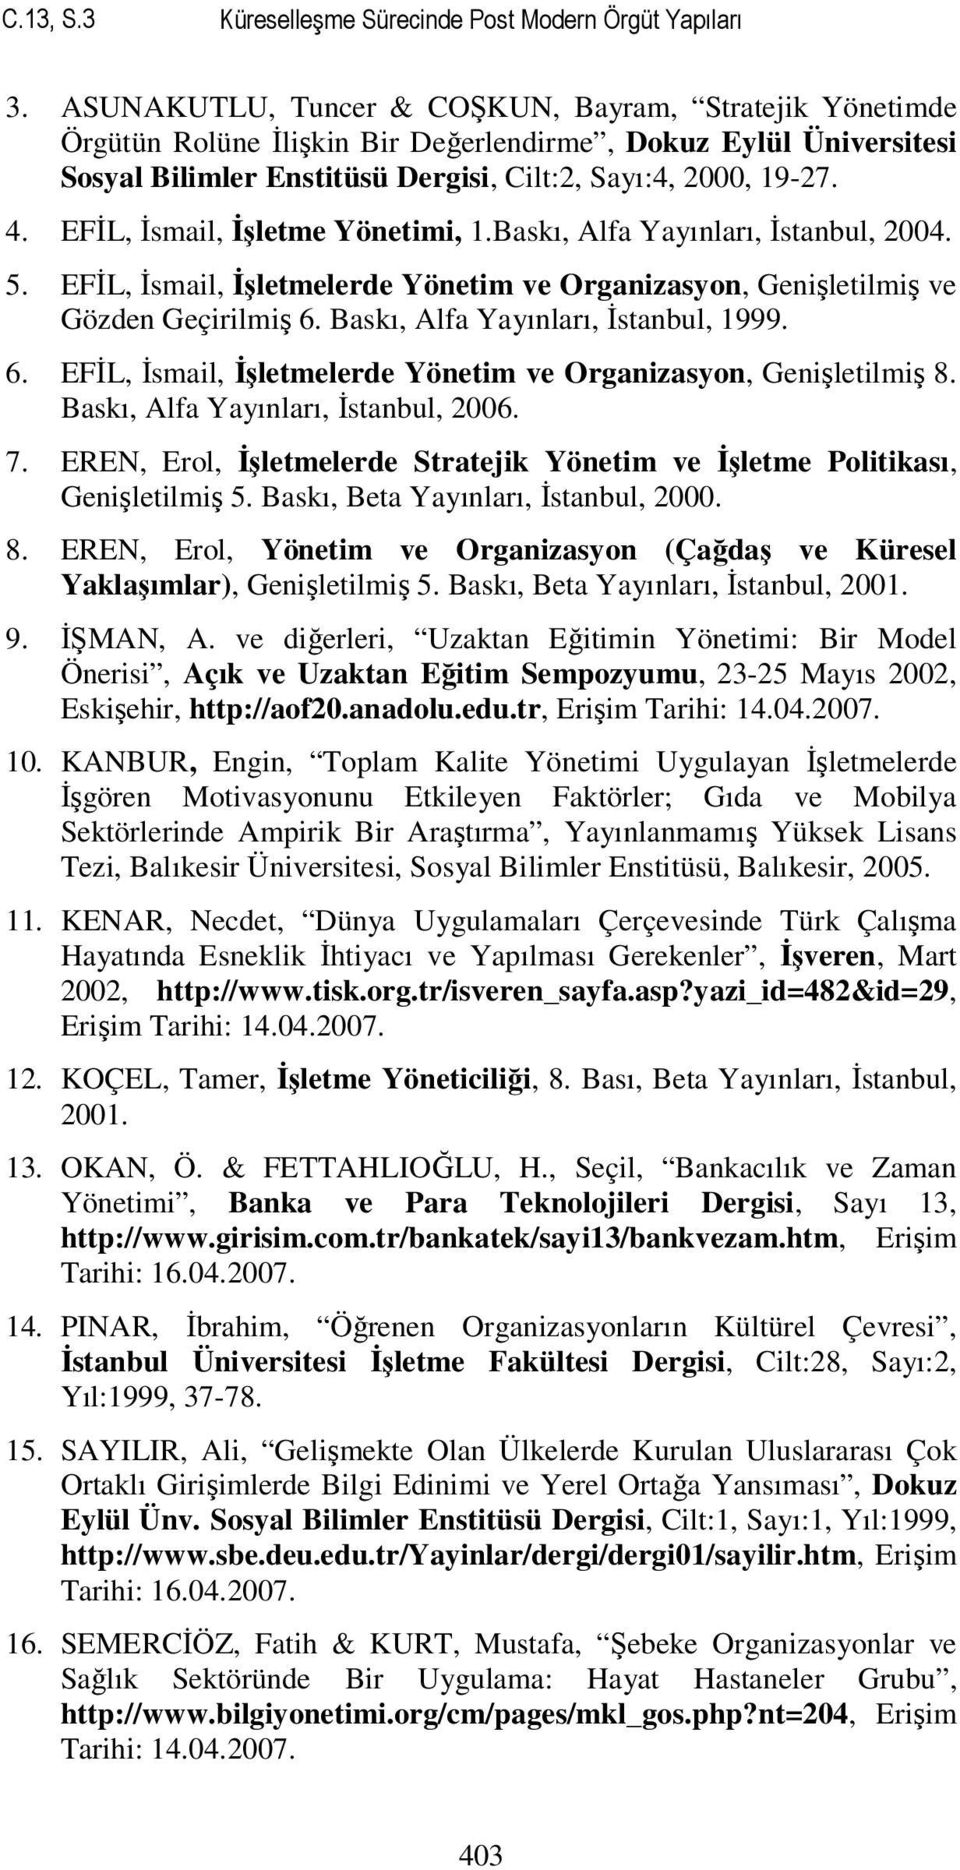 EFİL, İsmail, İşletme Yönetimi, 1.Baskı, Alfa Yayınları, İstanbul, 2004. 5. EFİL, İsmail, İşletmelerde Yönetim ve Organizasyon, Genişletilmiş ve Gözden Geçirilmiş 6.